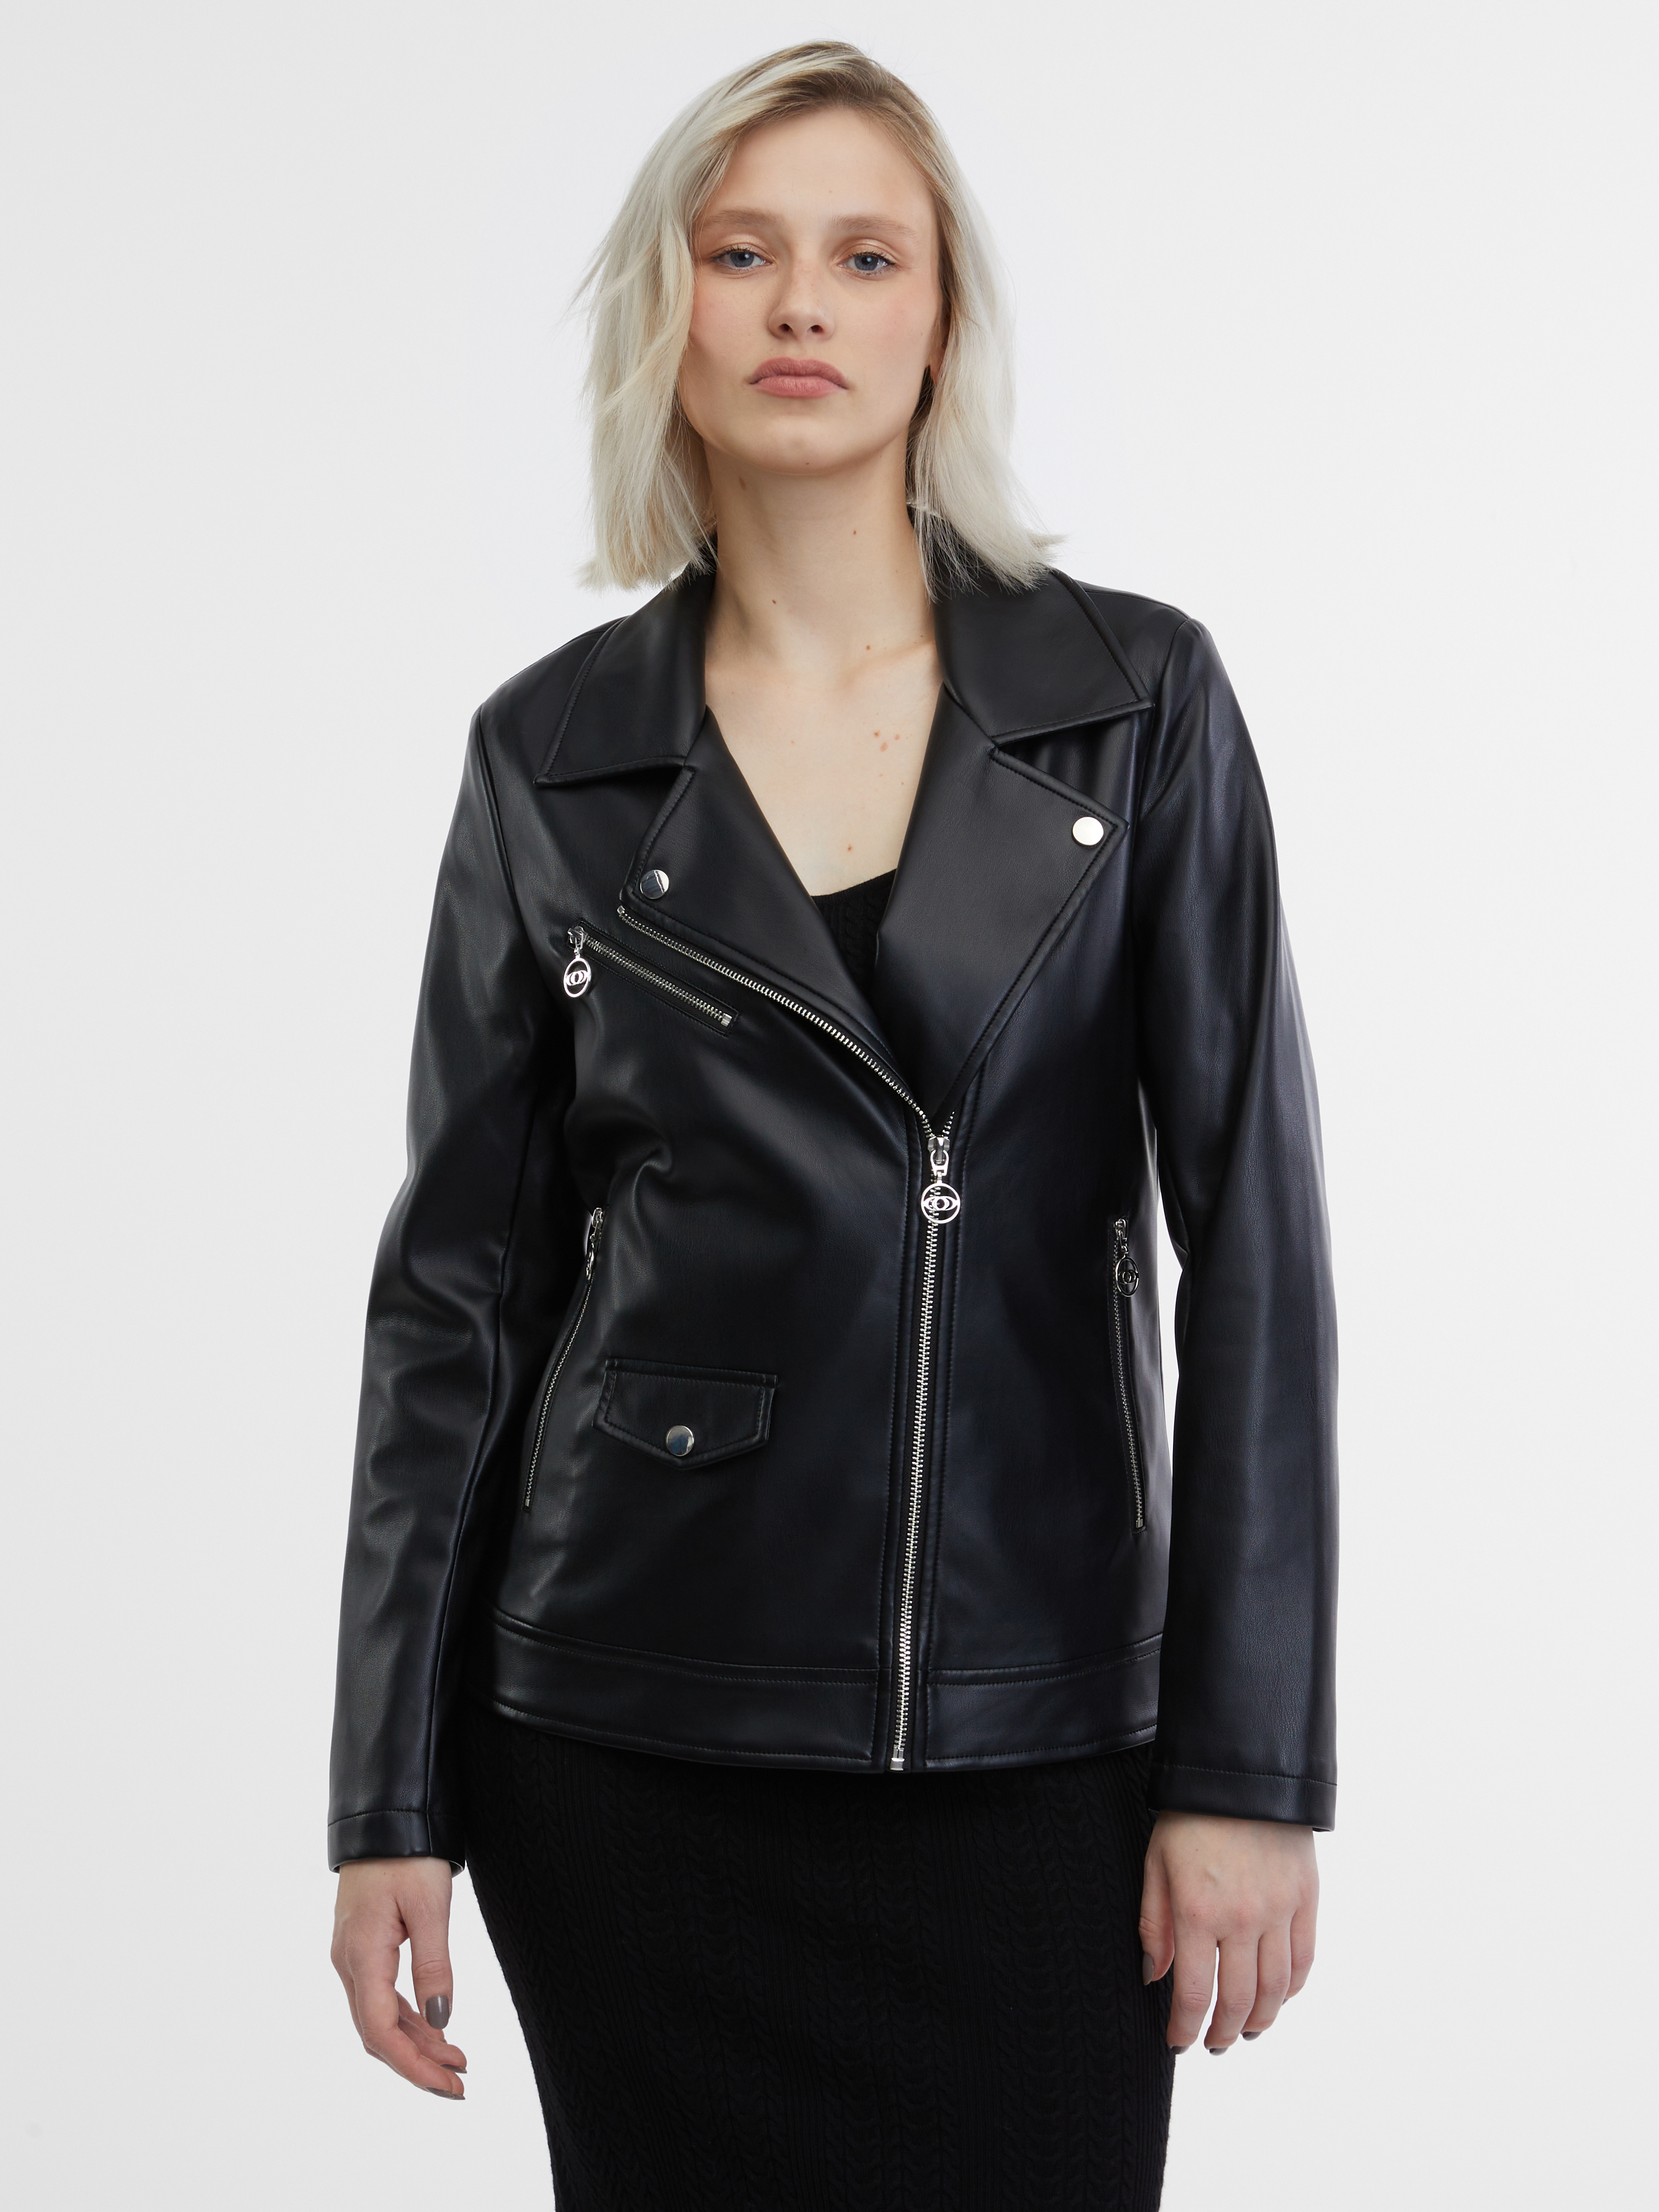 Orsay Black Women's Faux Leather Jacket - Women